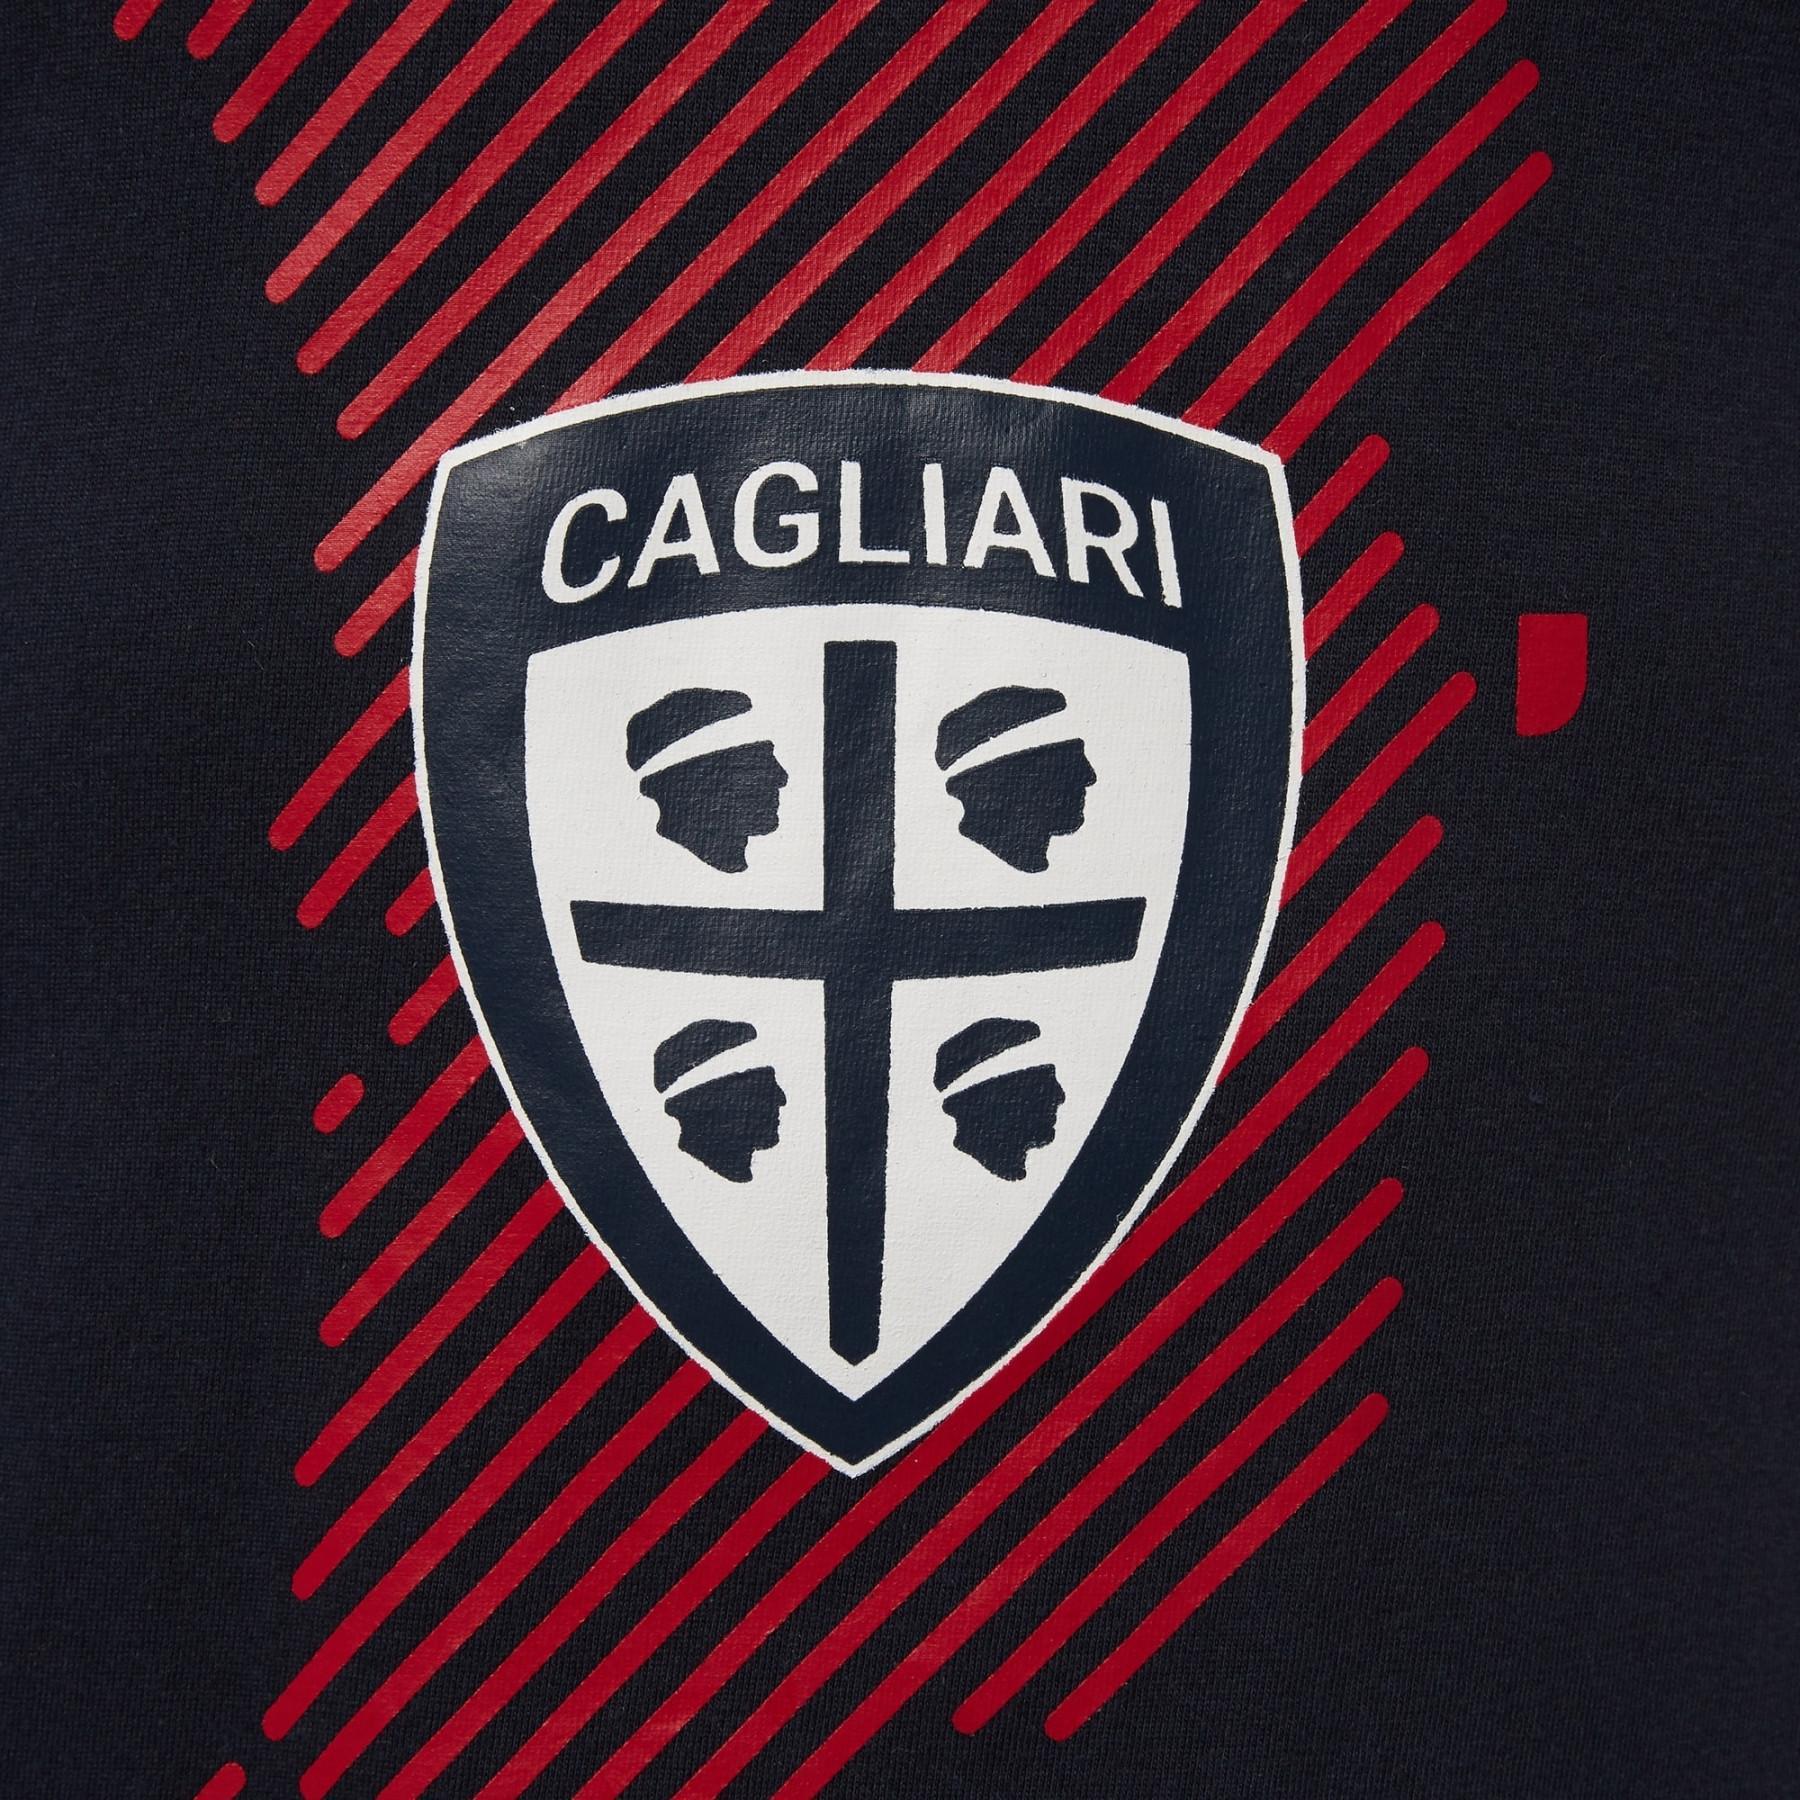 Koszulka Cagliari Calcio bh 2 stampa